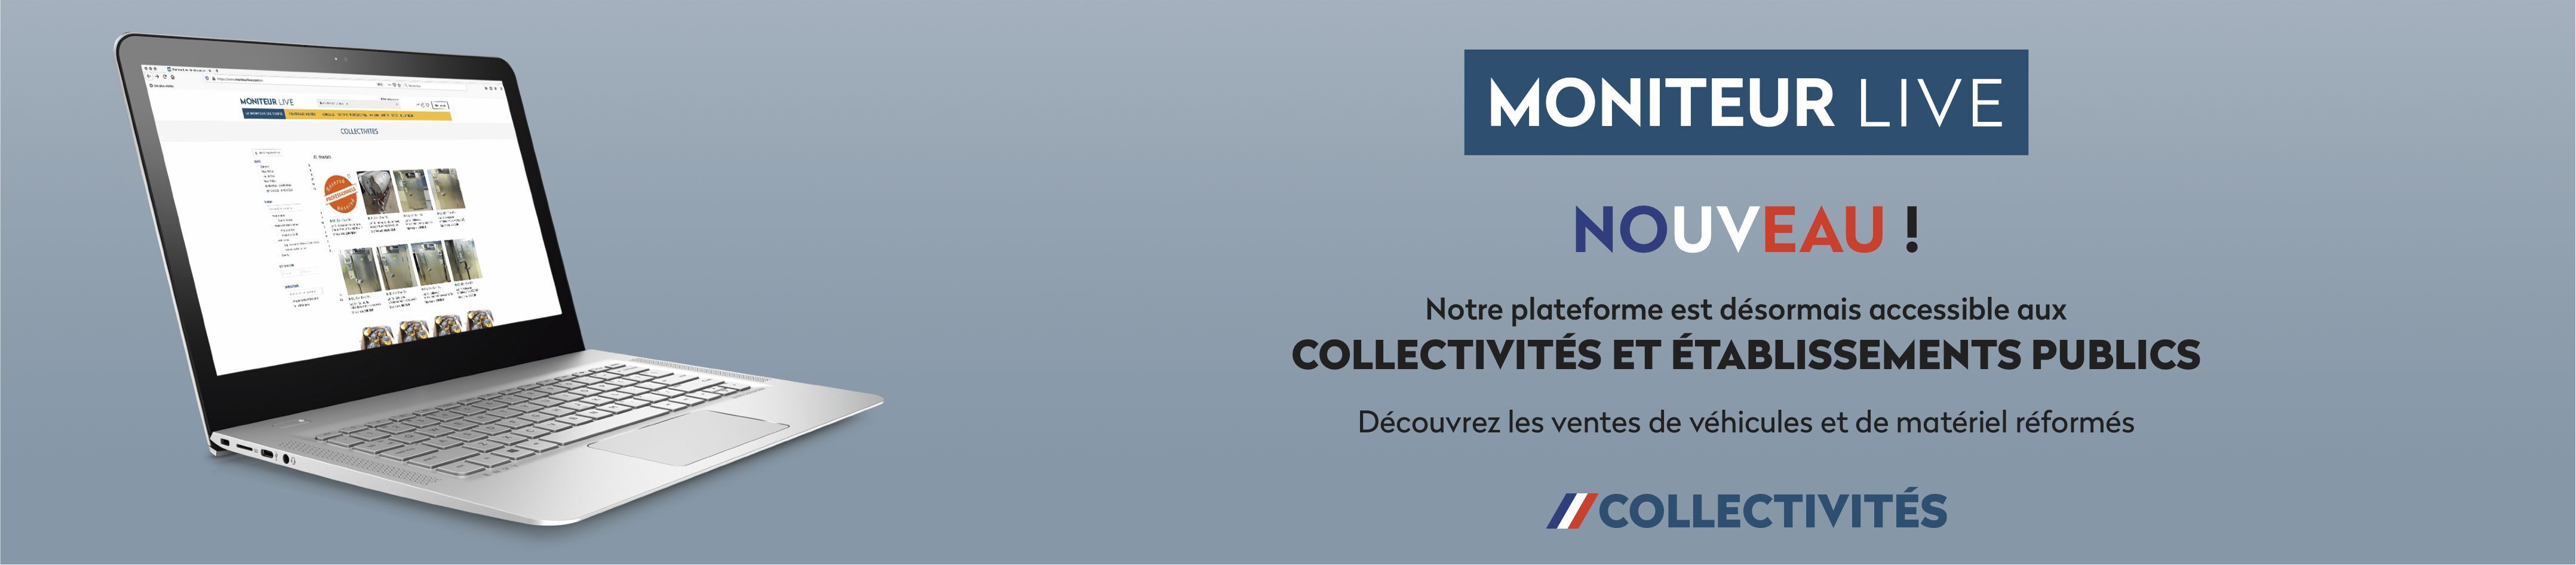 MoniteurLive.com